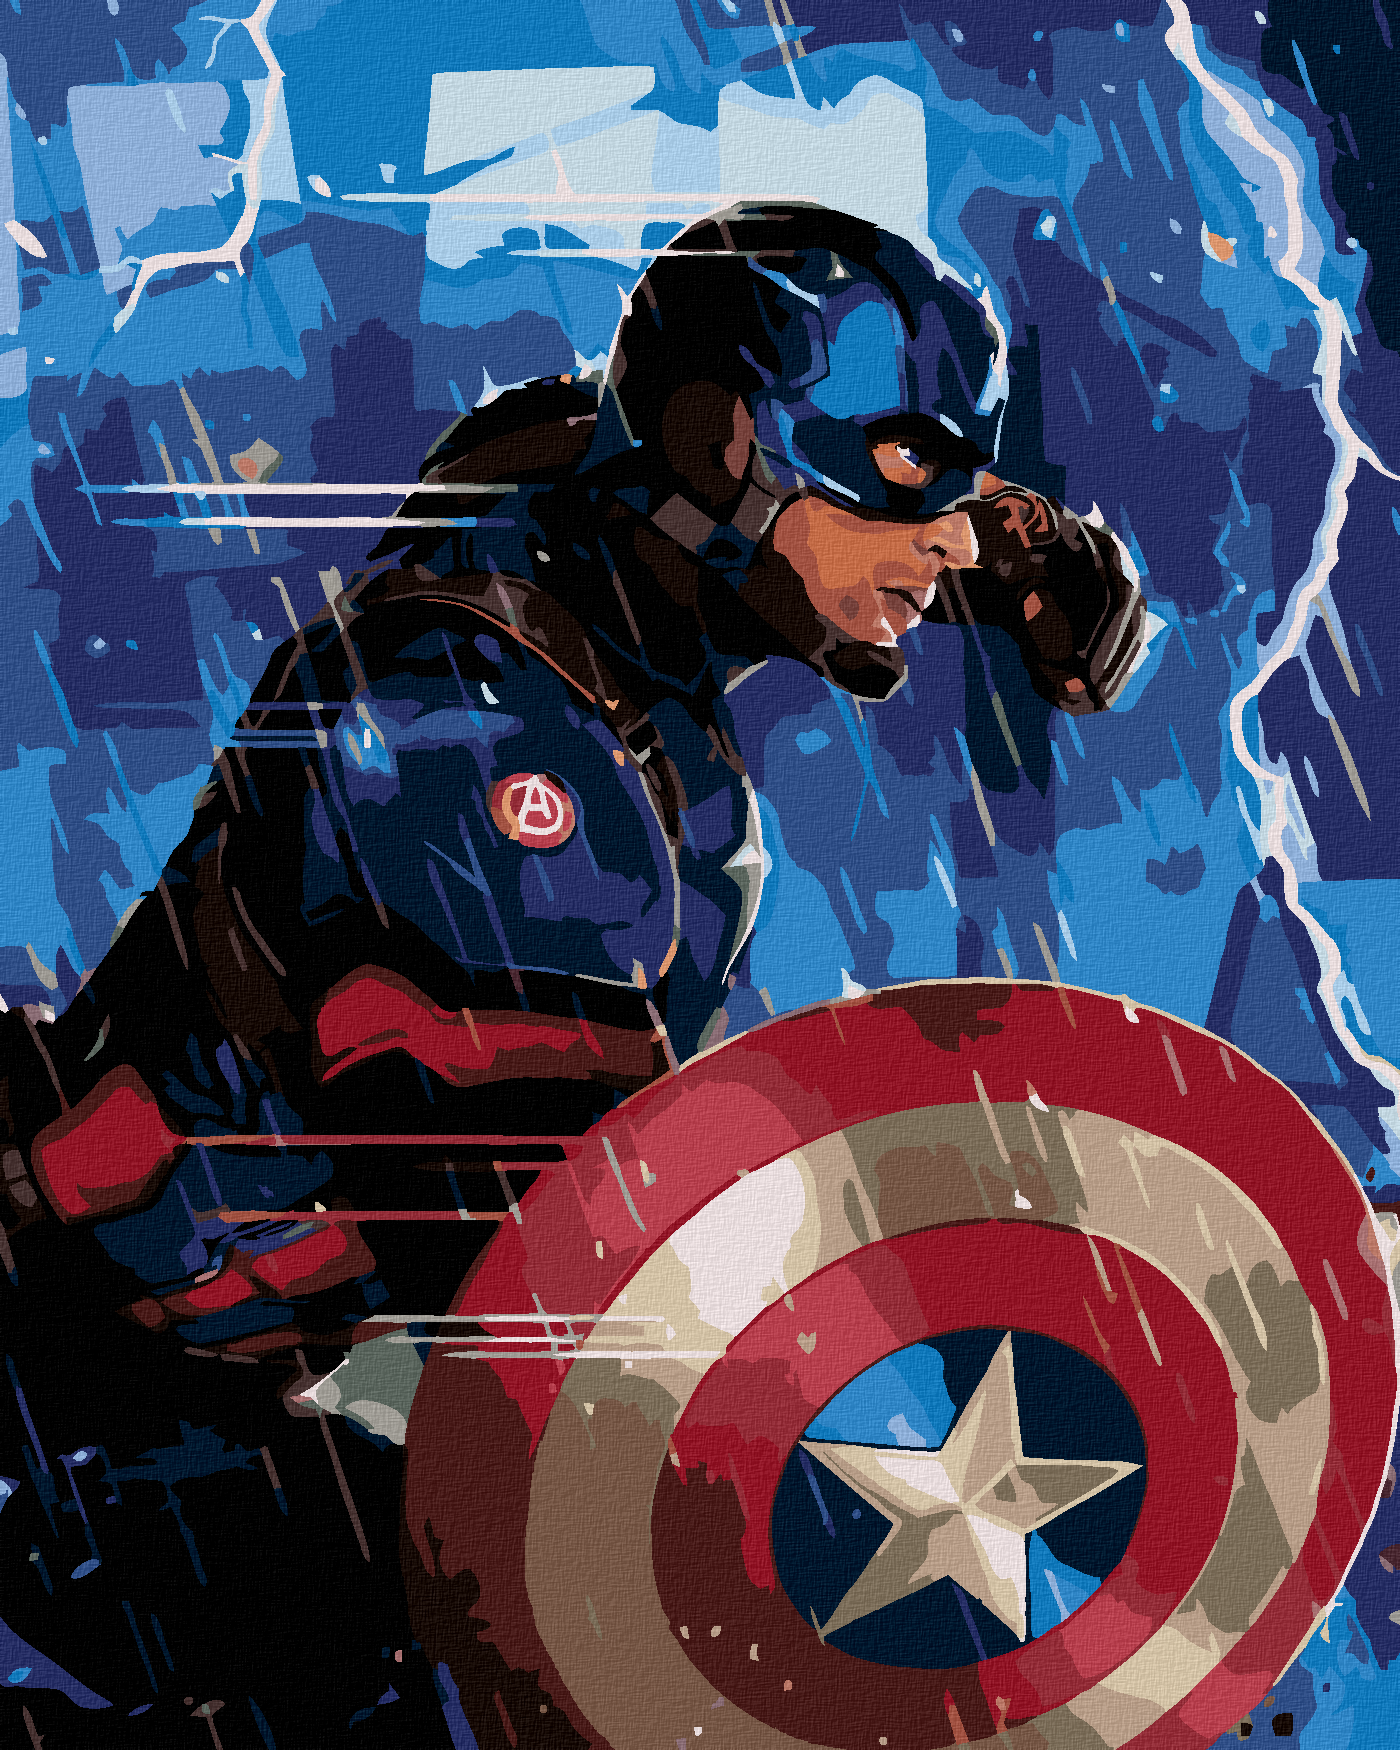 Haz tú mismo el escudo del Capitán América